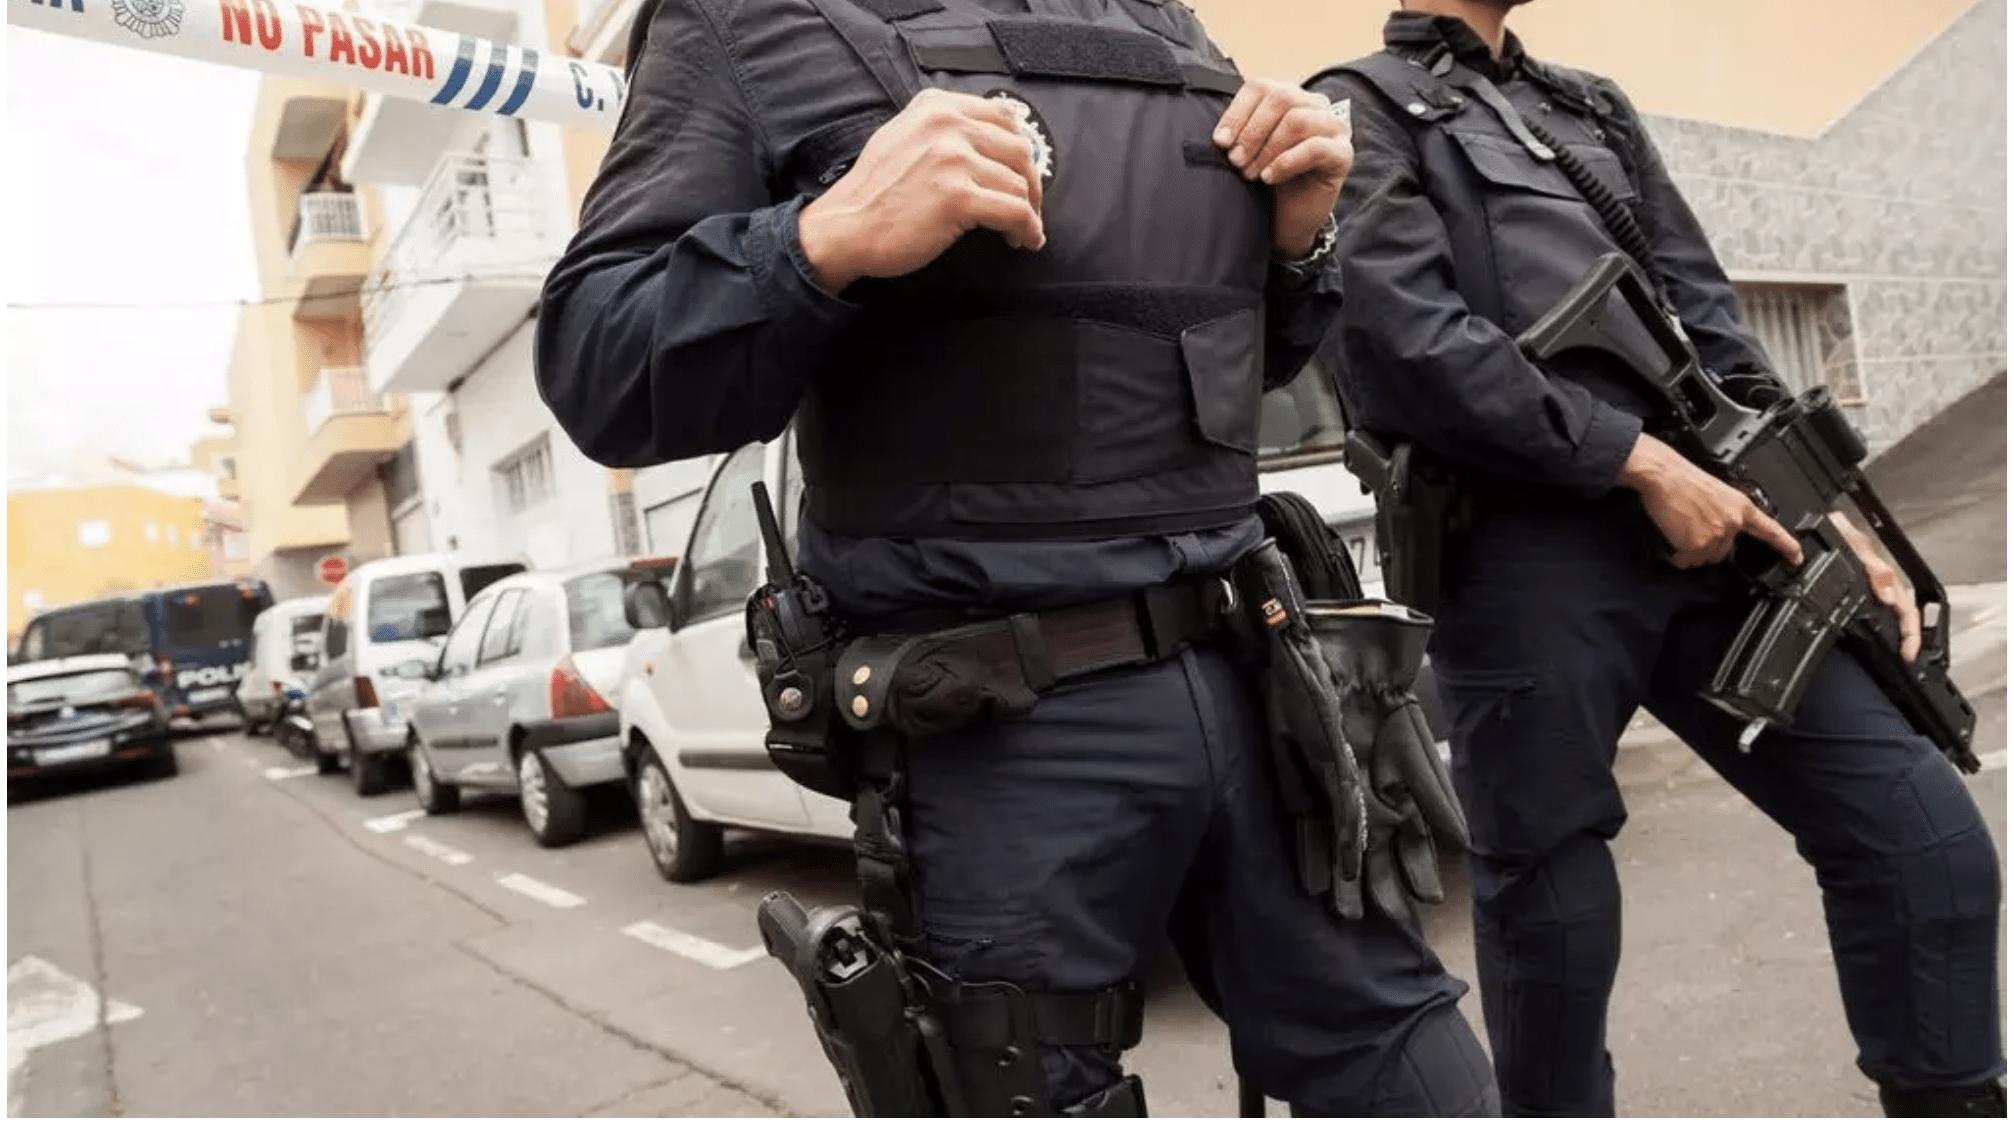 El TSJM confirma la suspensión de funciones de 7 días a un policía nacional por perder las placas de su chaleco